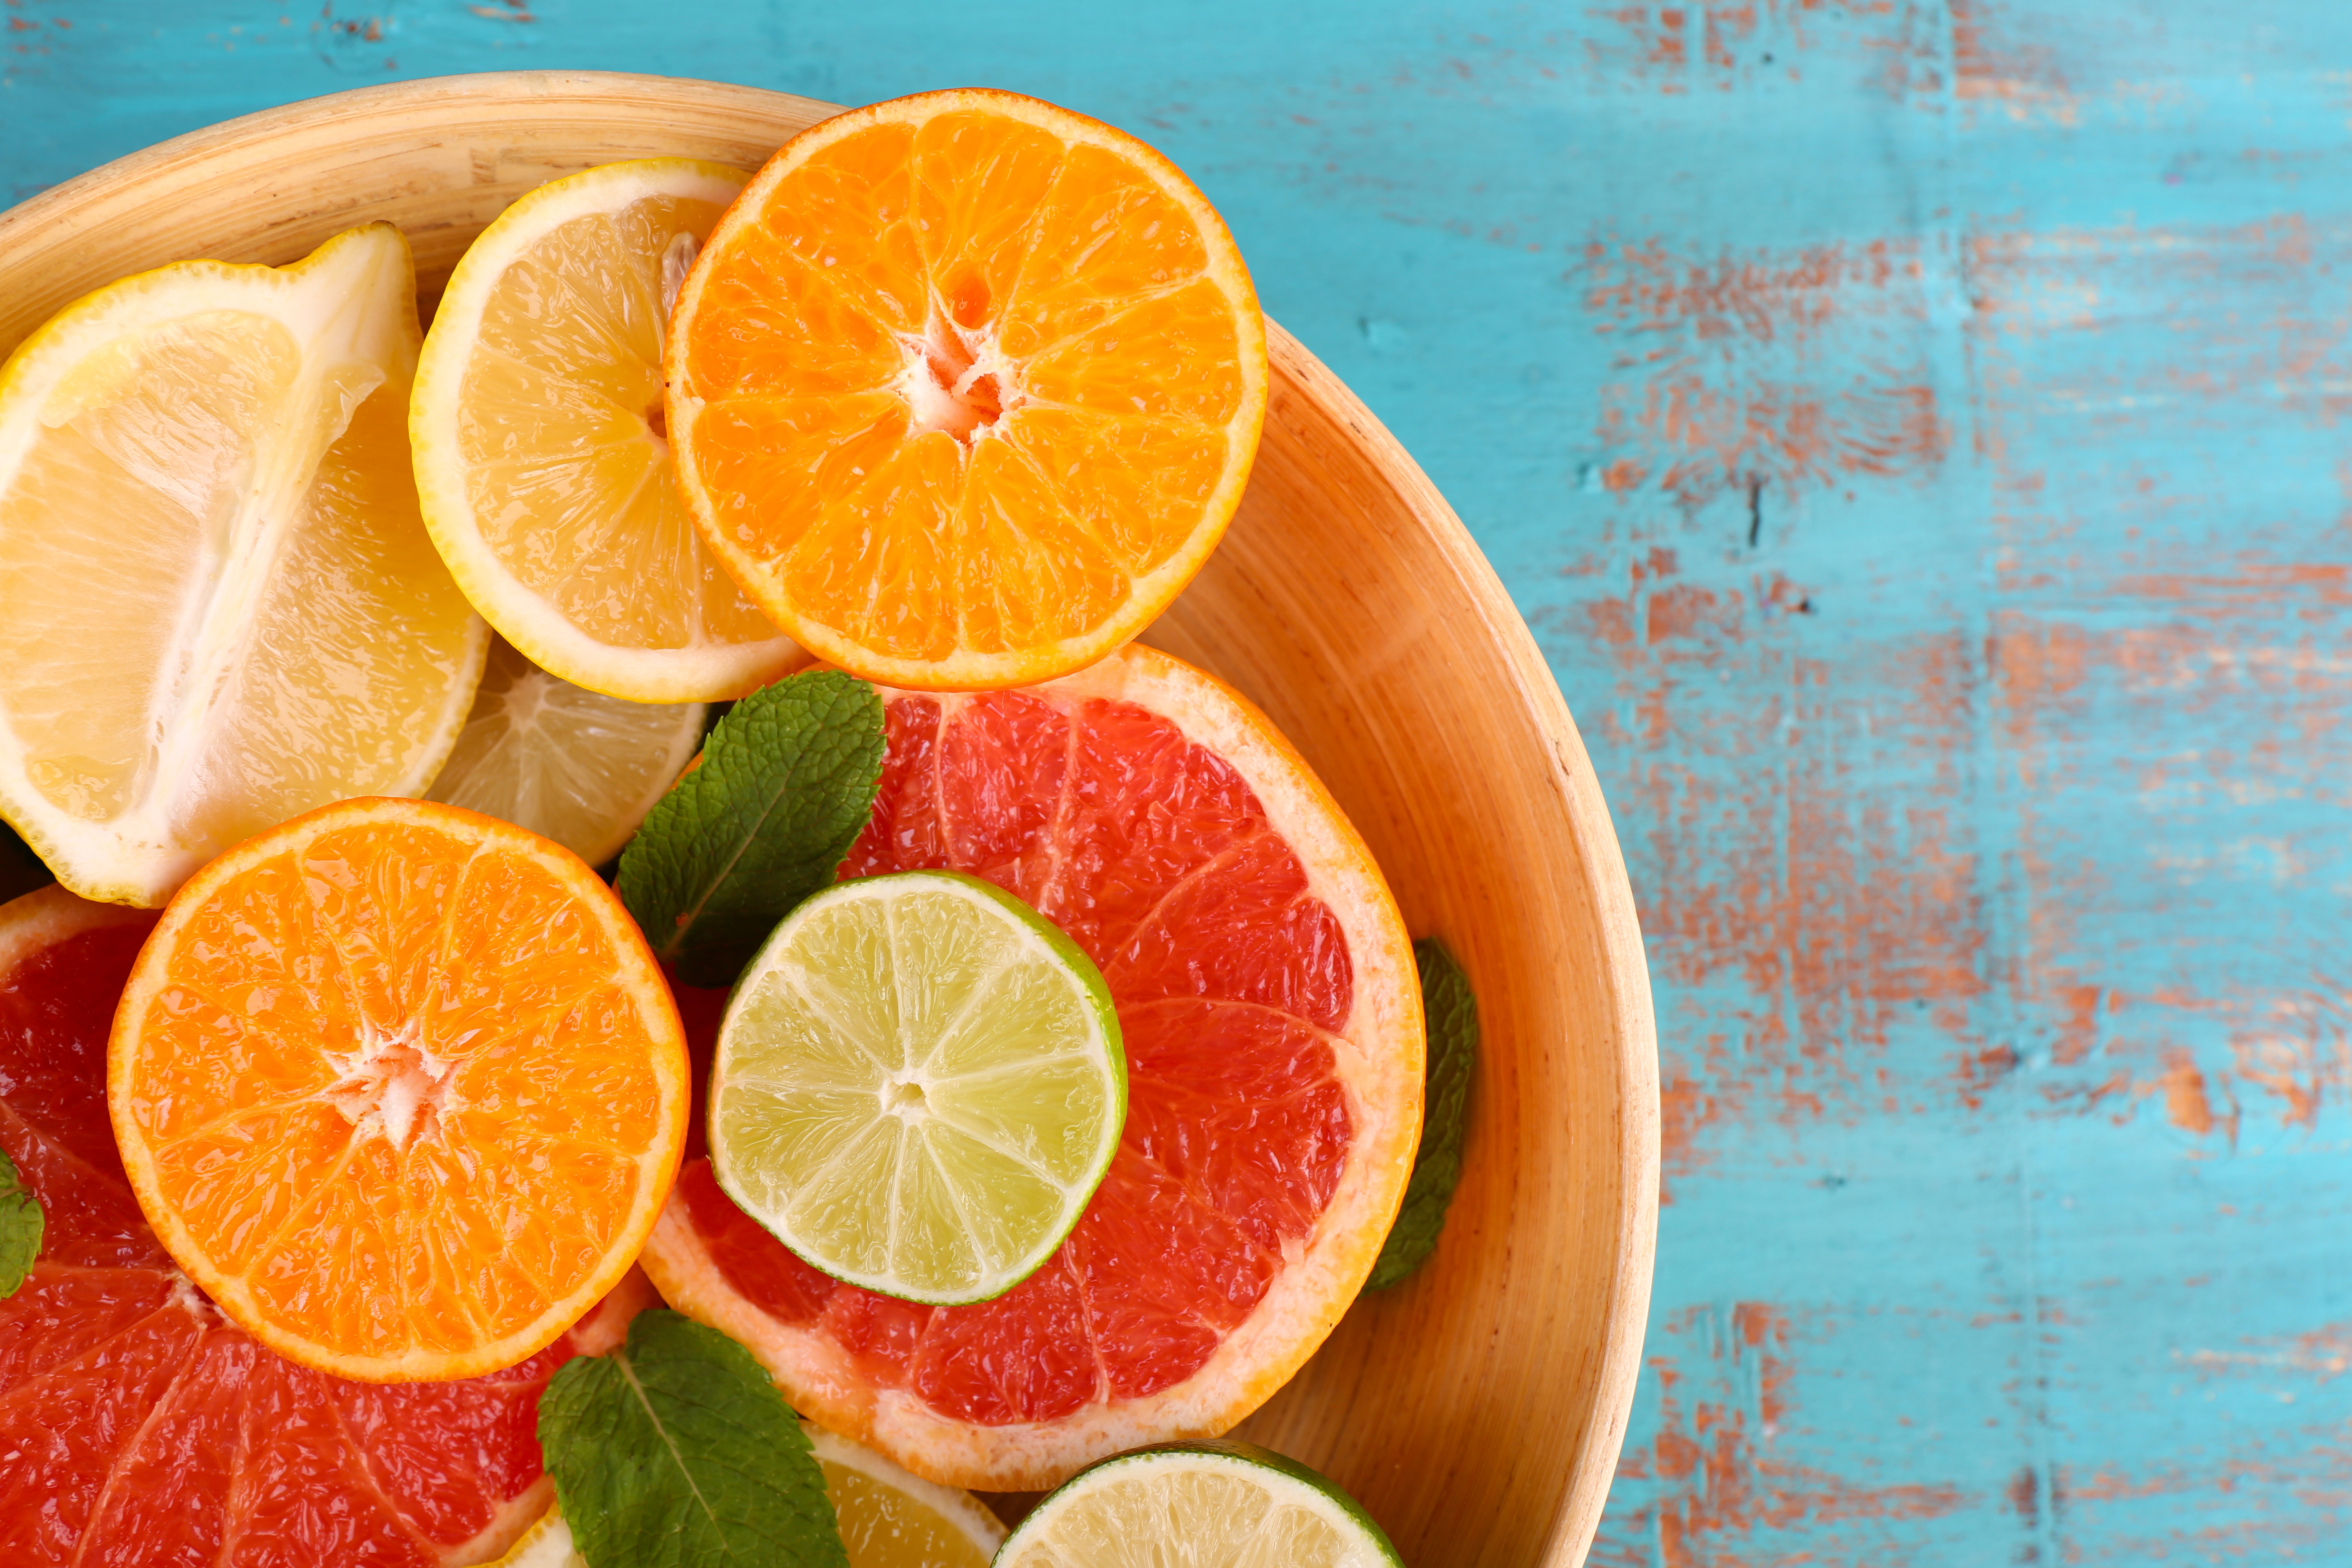 La dosis adecuada de vitamina C se obtiene al consumir frutas y verduras de forma variada y balanceada. Pero existen algunos alimentos que potencian la absorción de este micronutriente. (Foto Prensa Libre: Shutterstock).